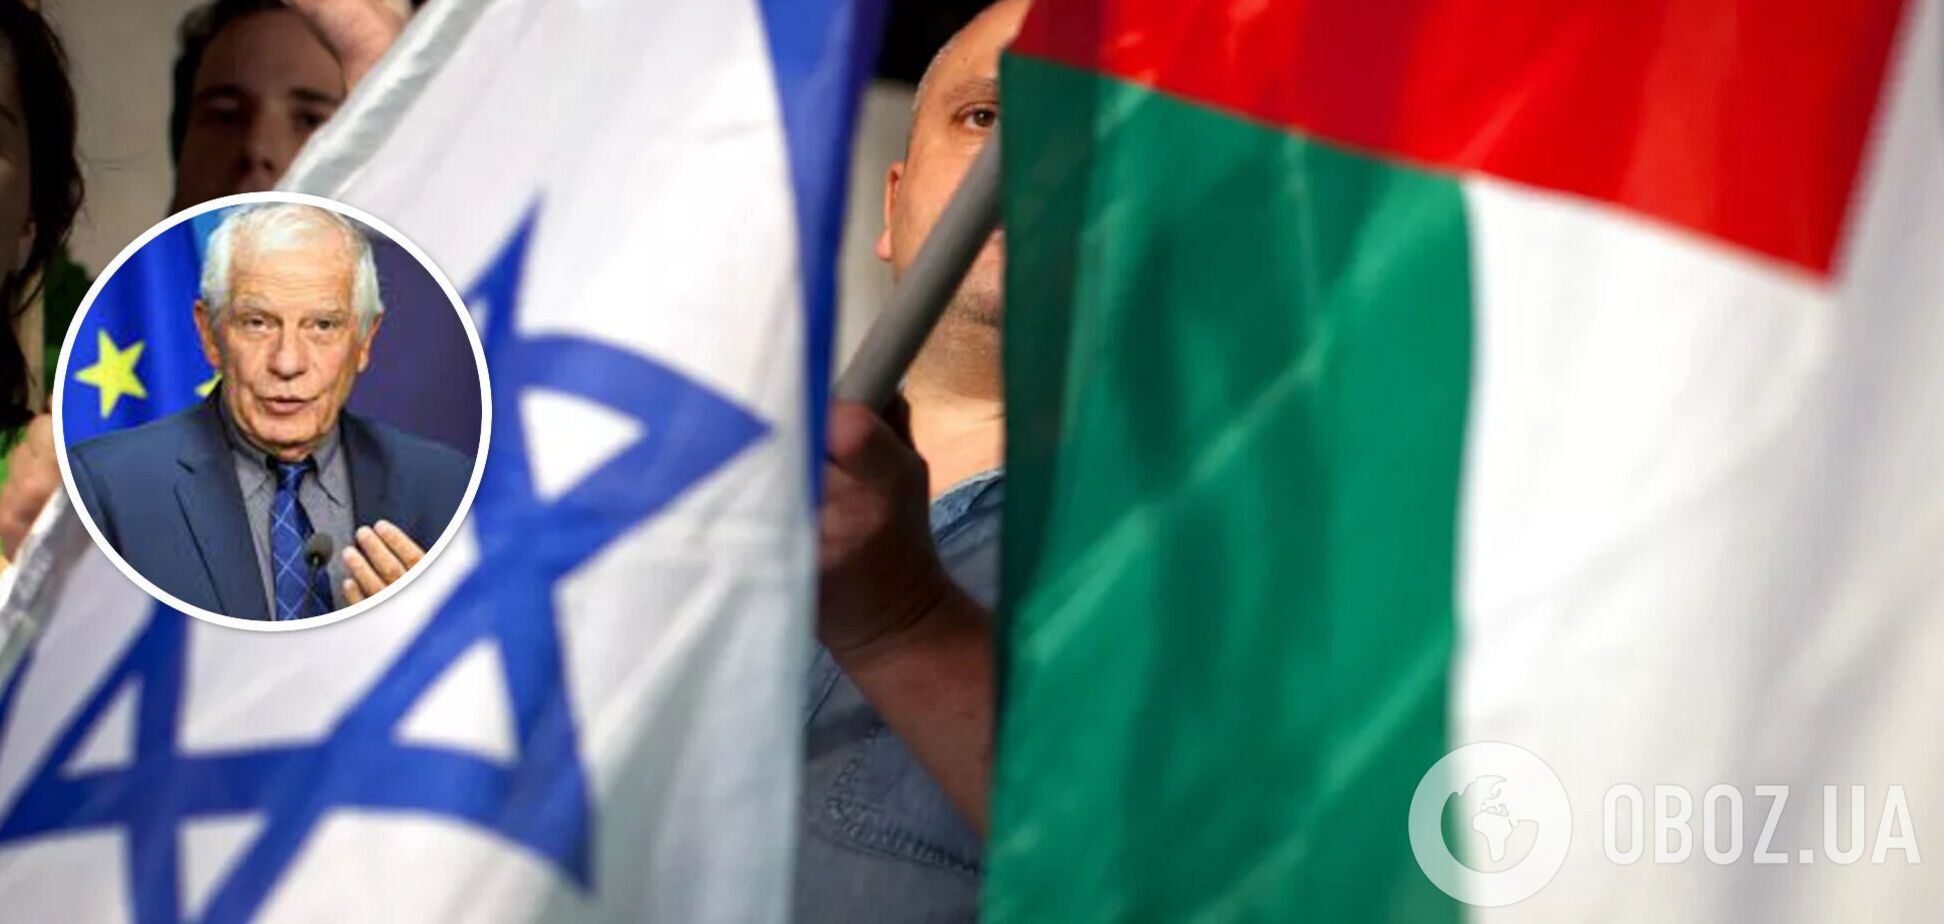 Боррель обвинил Израиль в финансировании ХАМАС с целью ослабить Палестинскую автономию: что происходит